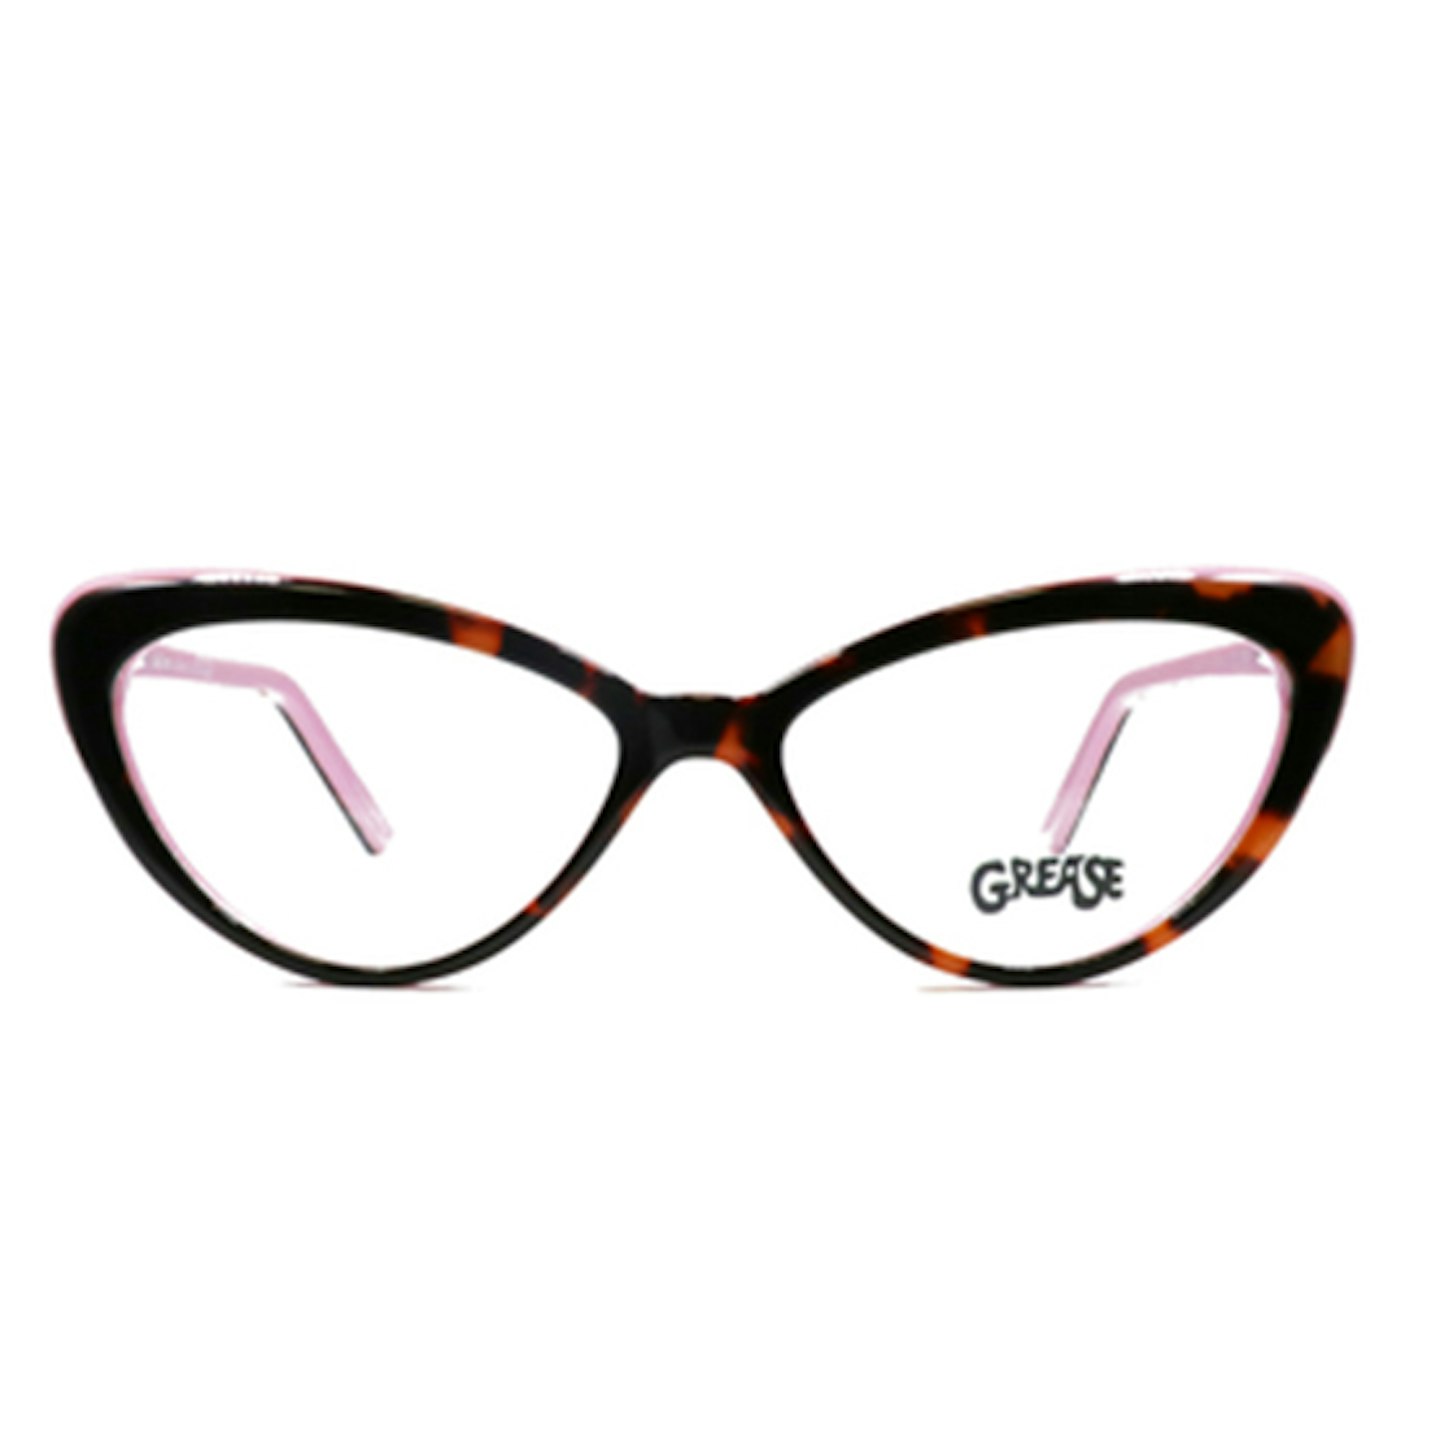 MGse1 Asda glasses